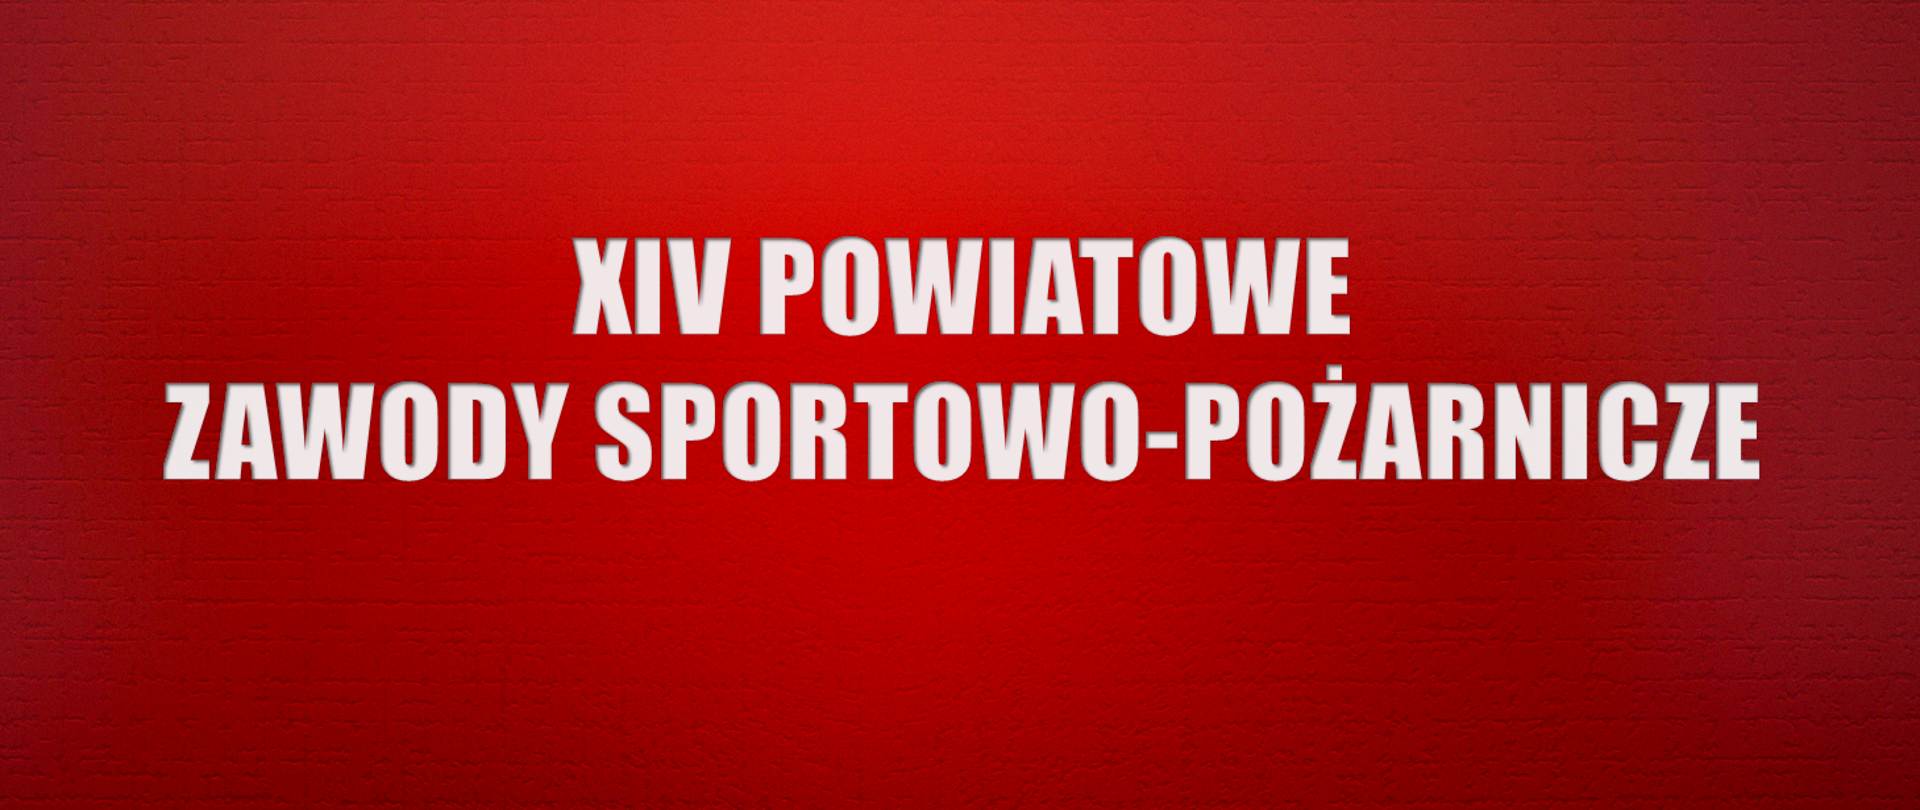 Na czeronym tle biały napis "XIV Powiatowe Zawody Sportowo-Pożarnicze"